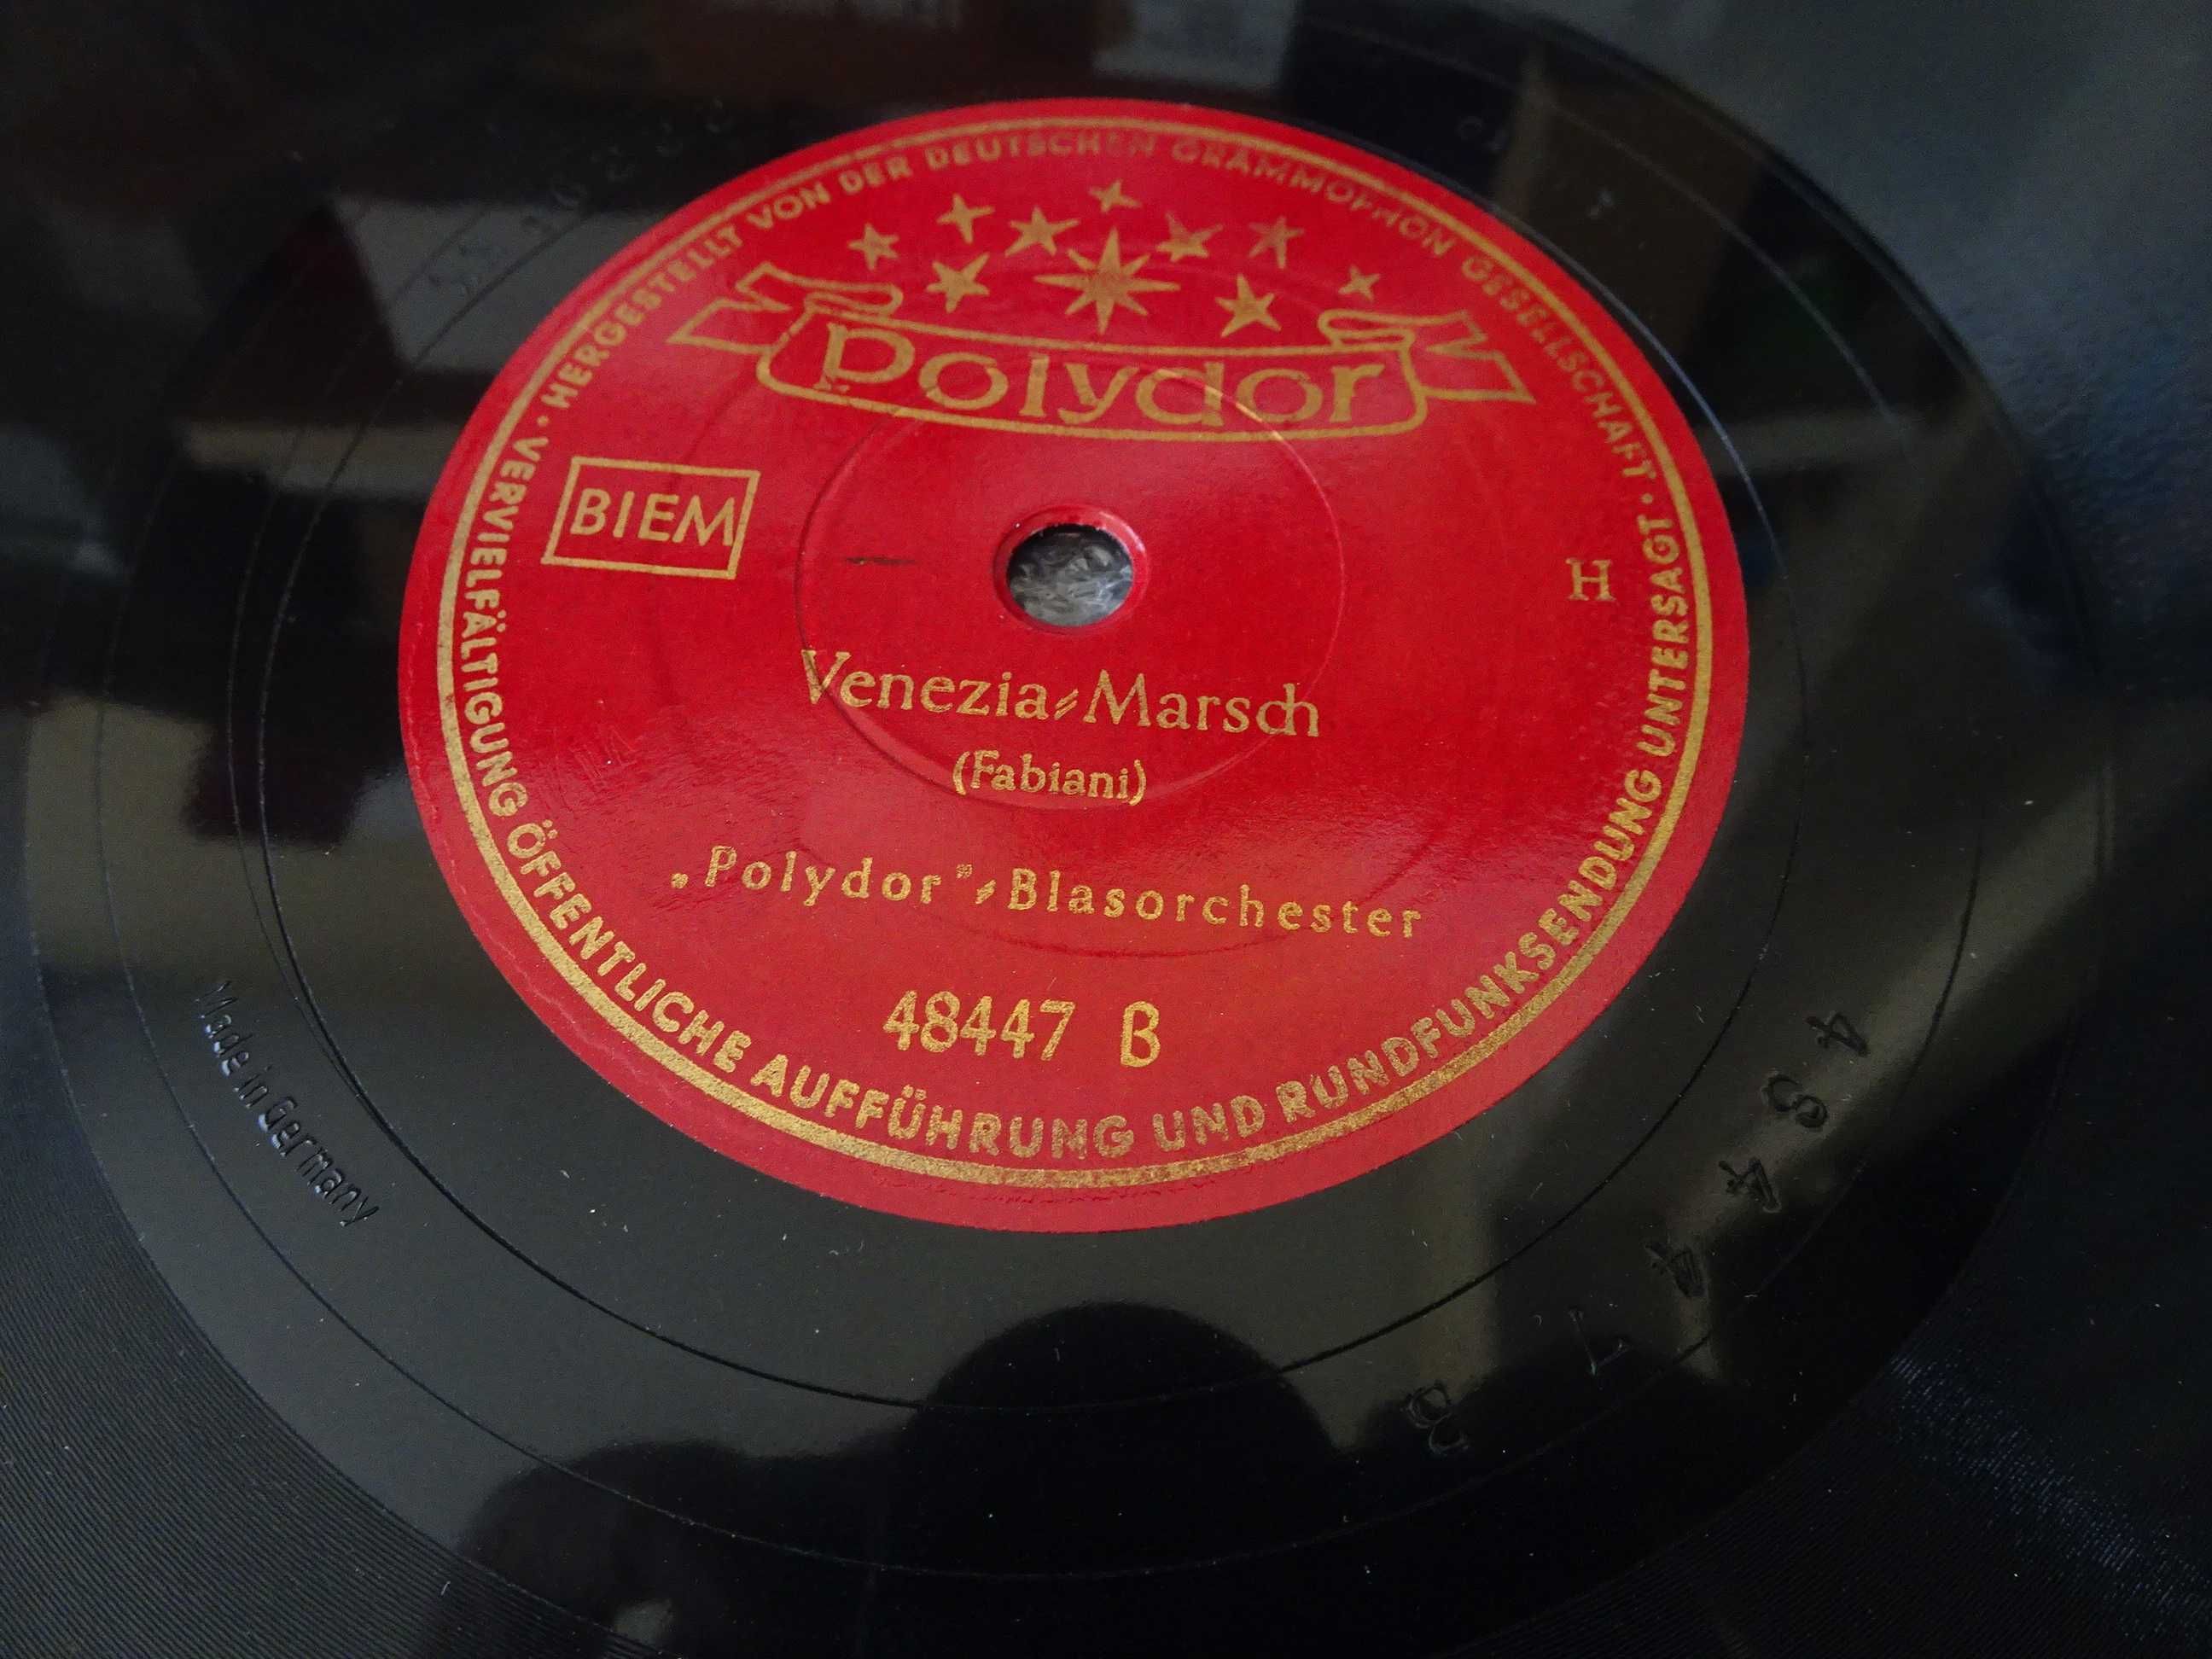 Disco grafonola Polydor Blasorchester - Germania Marsch / Venezia